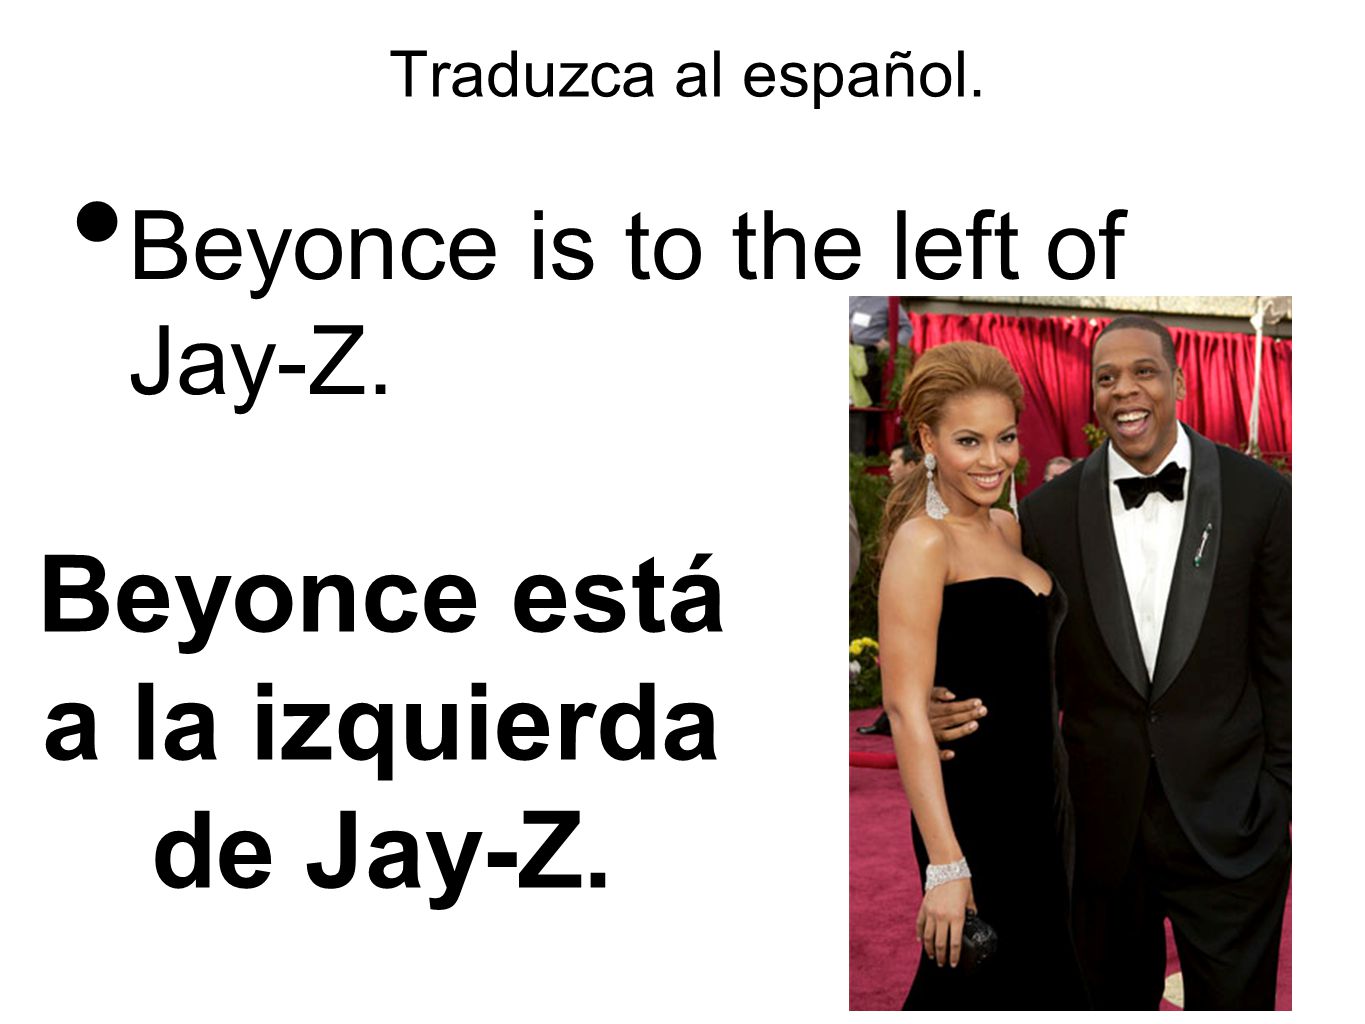 Beyonce está a la izquierda de Jay-Z.